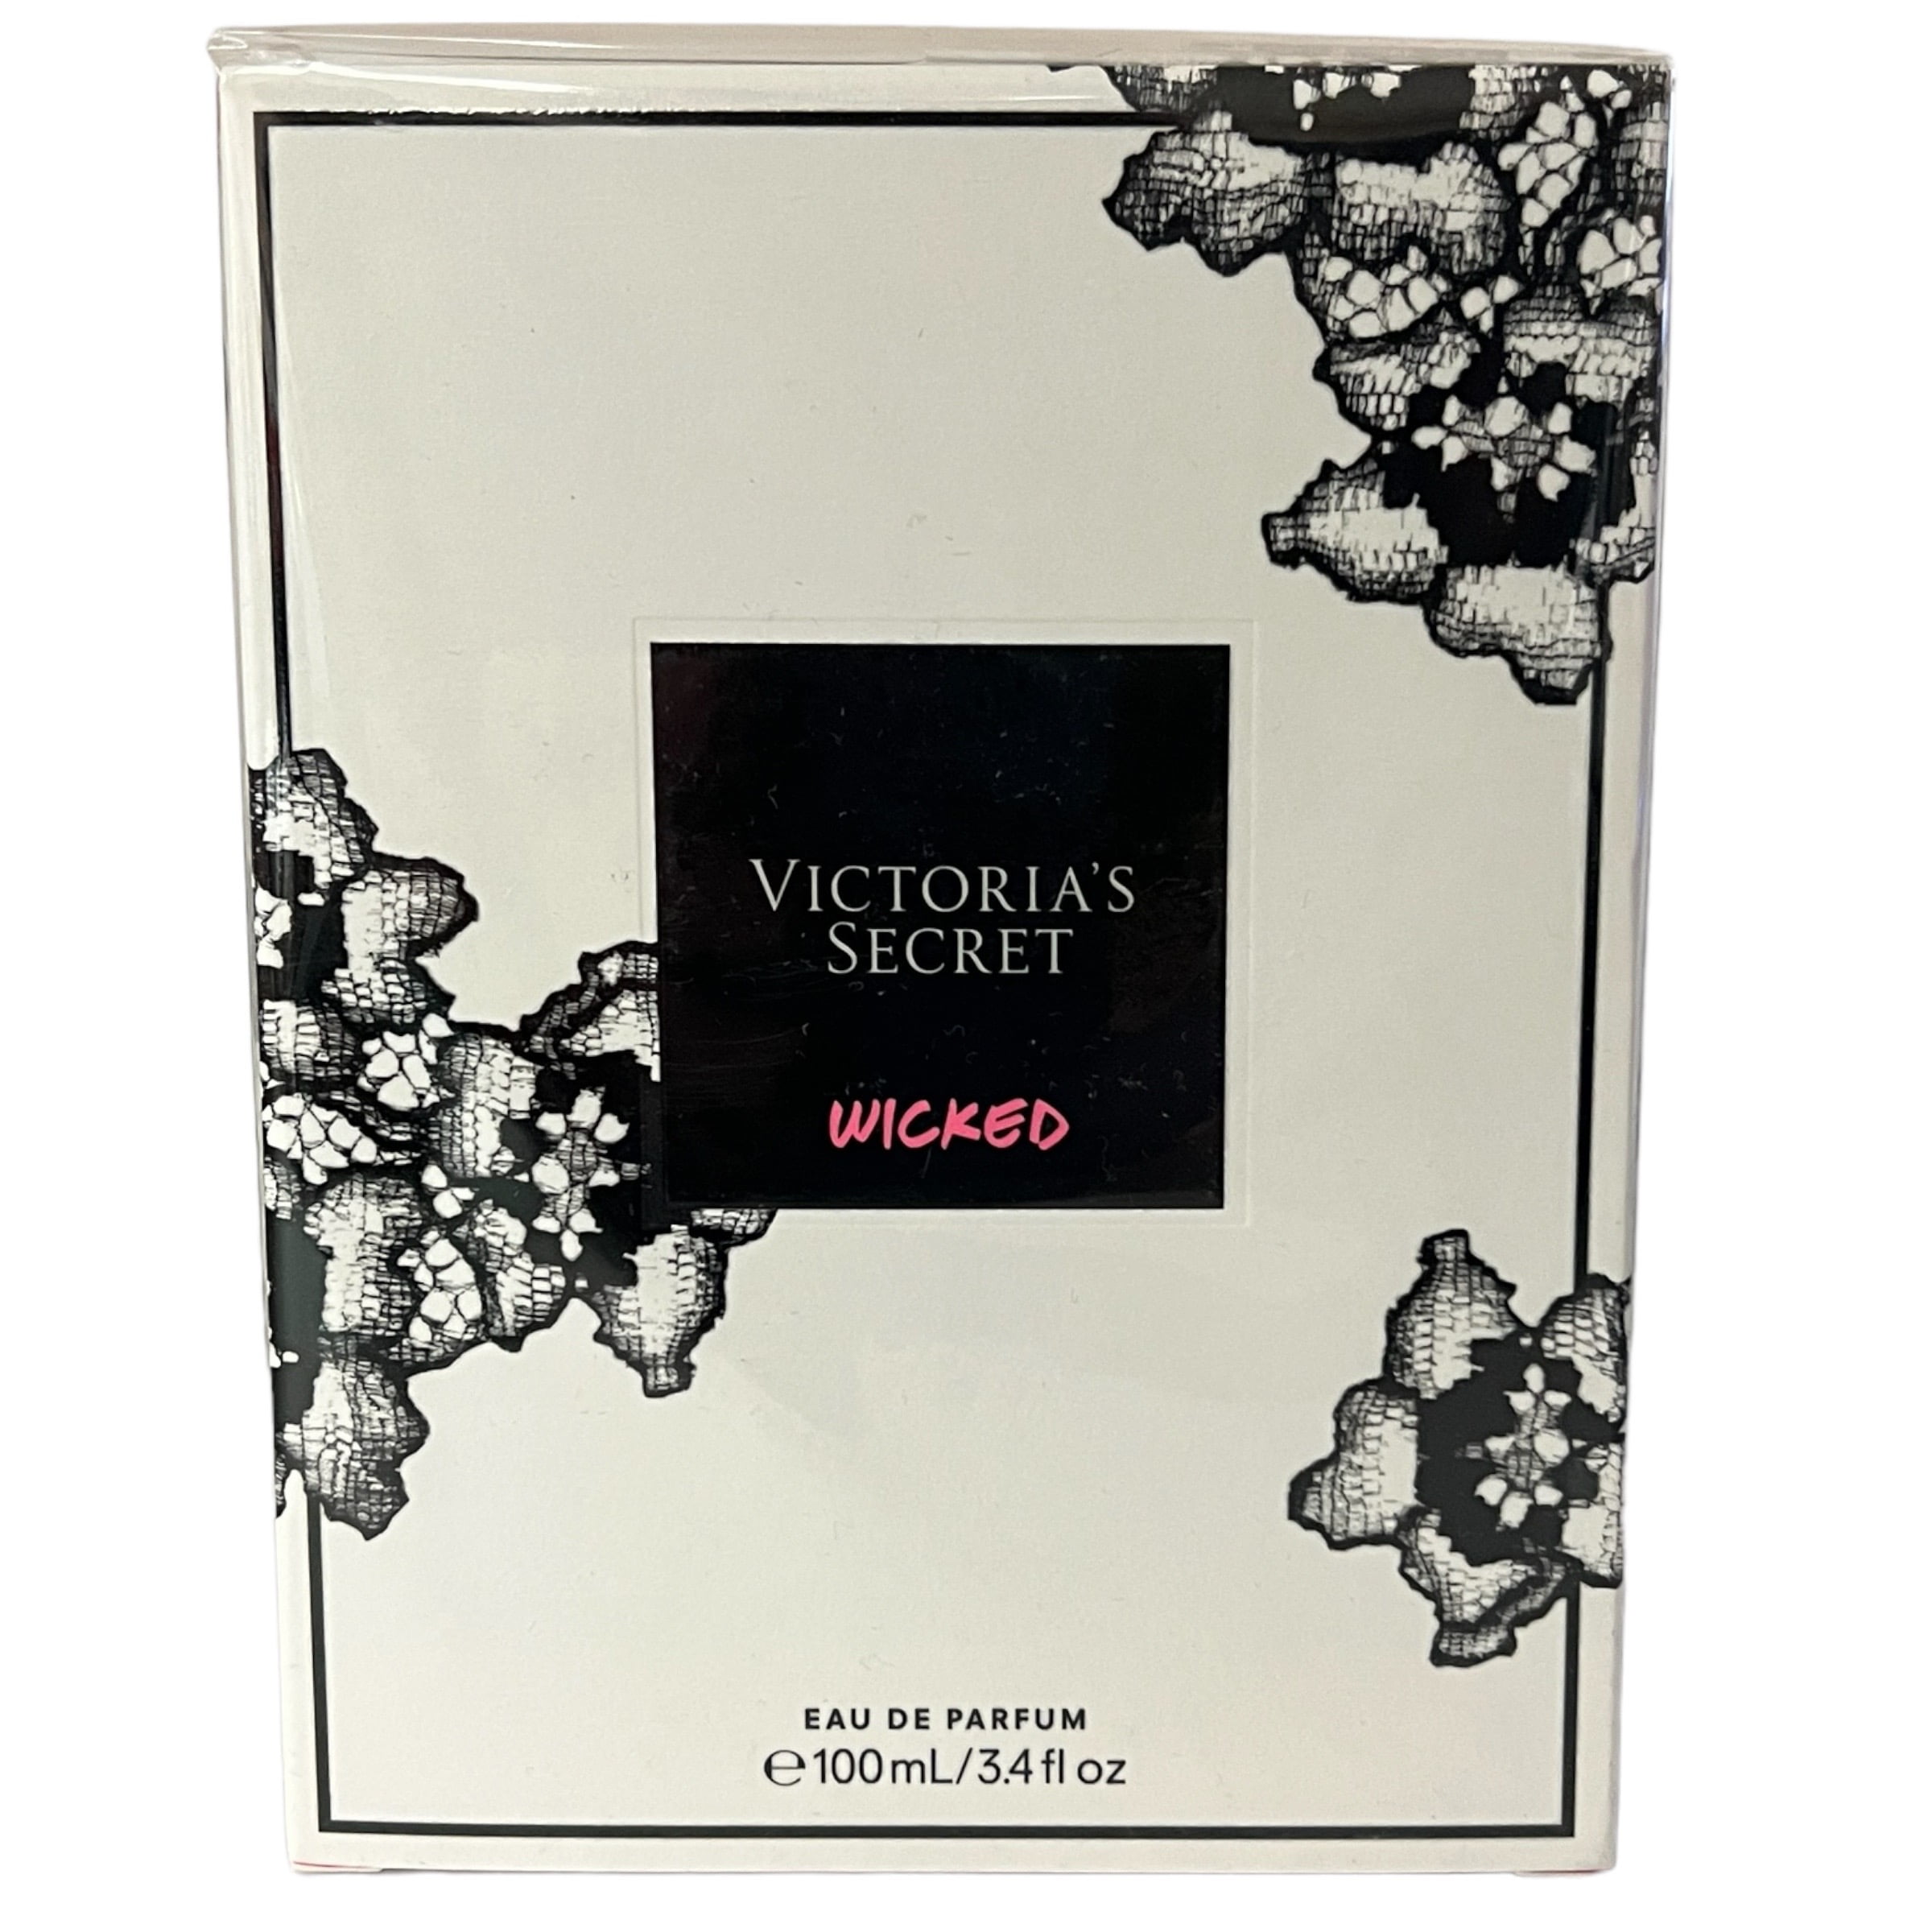 Victoria's Secret Wicked Eau De Parfum 3.4 fl oz